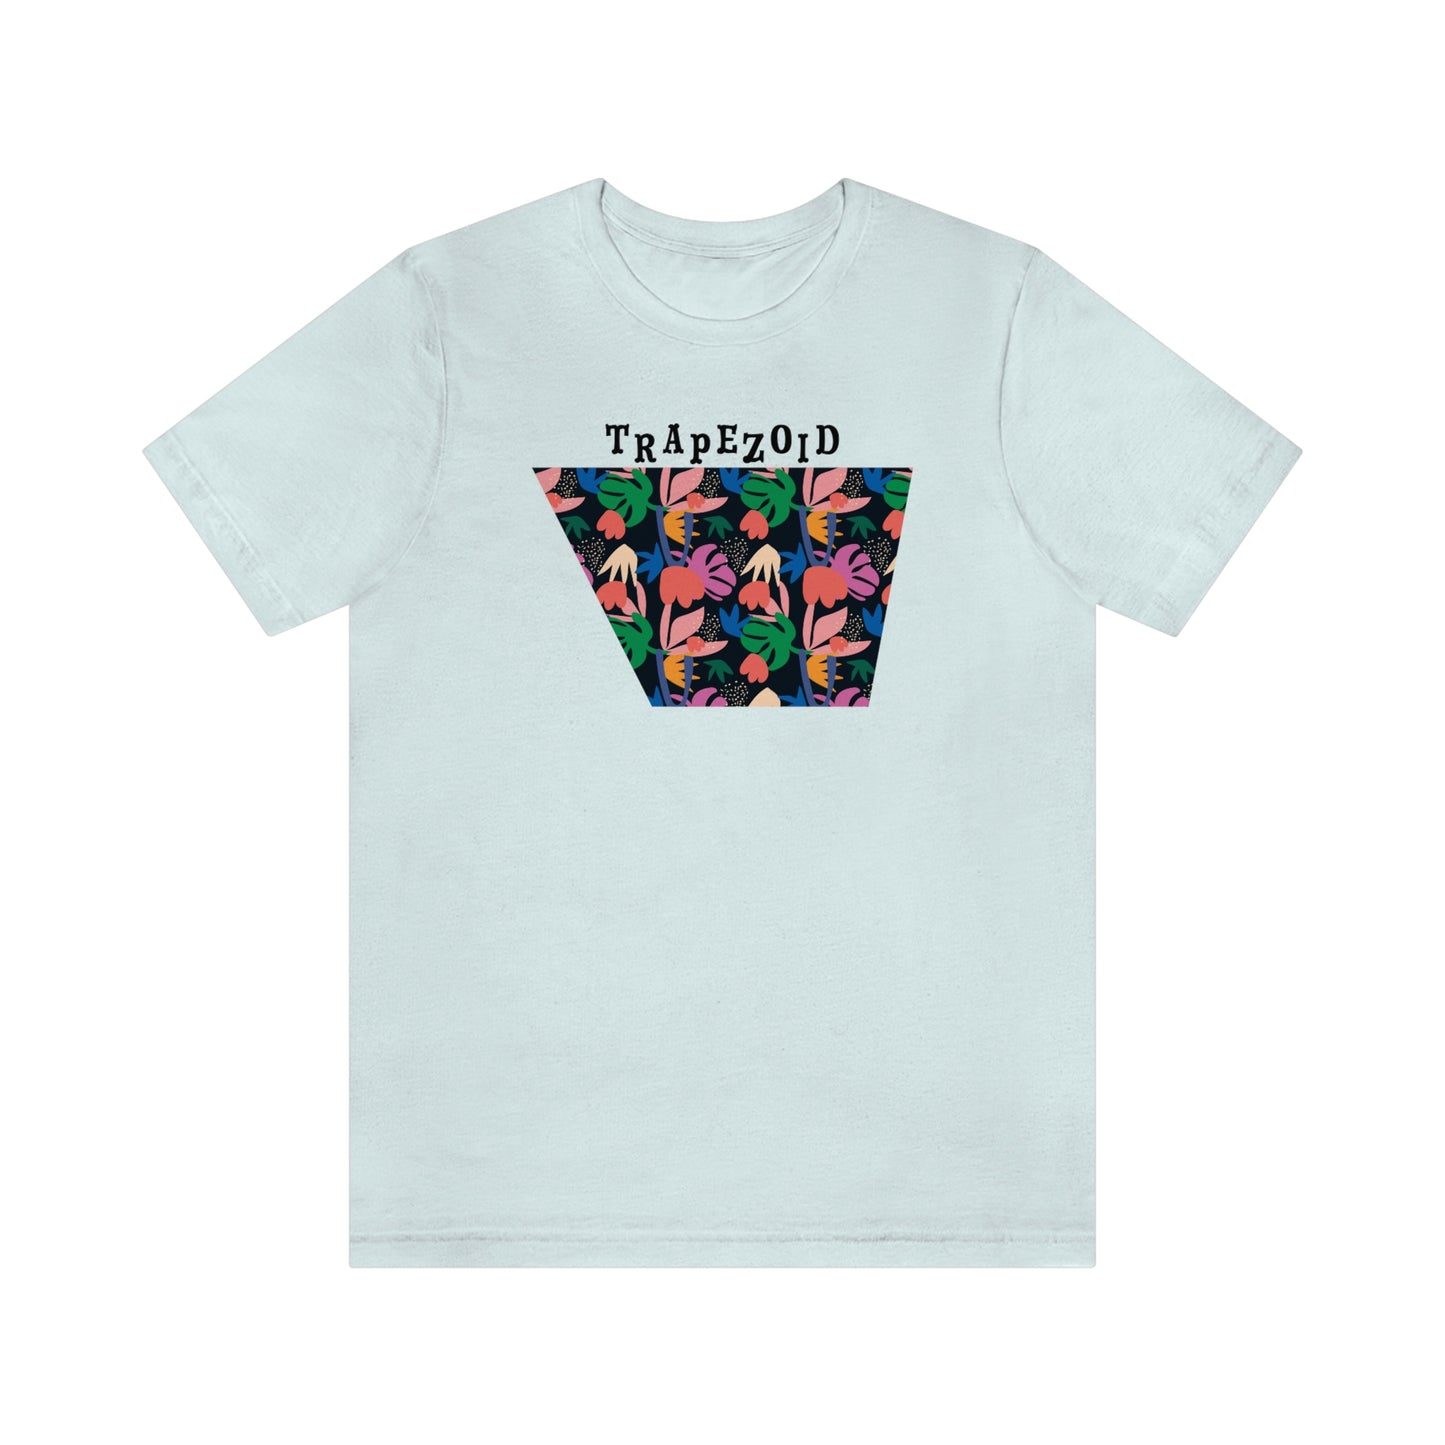 Trapezoid - Unisex T-Shirt